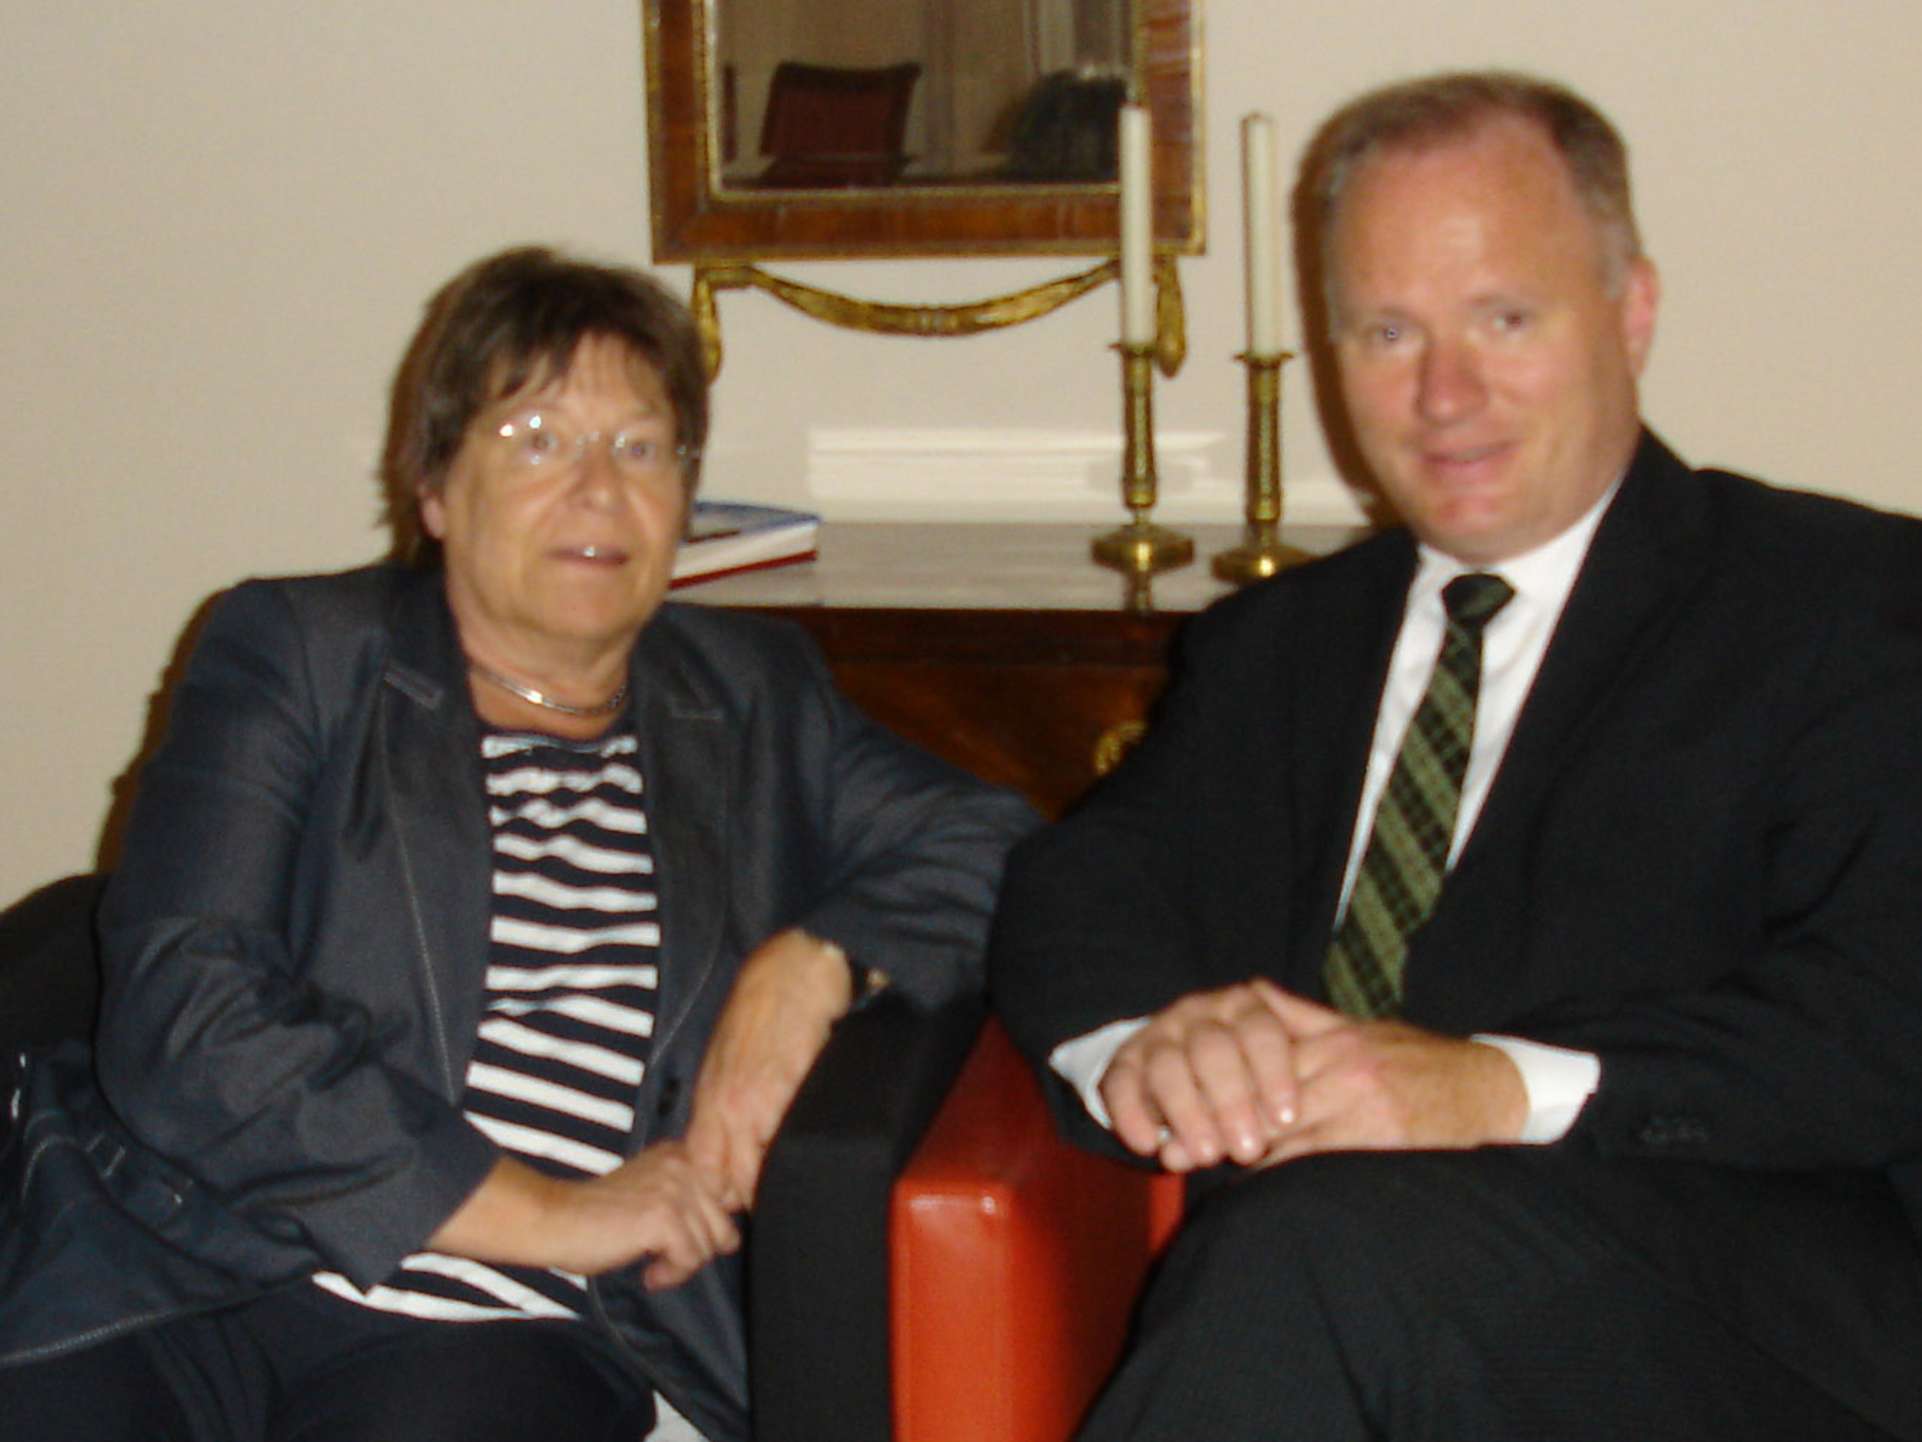 Landesvorsitzende Angelika Mertens, ASB LV Hamburg e.V., und Senator Michael Neumann, Behörde für Inneres und Sport